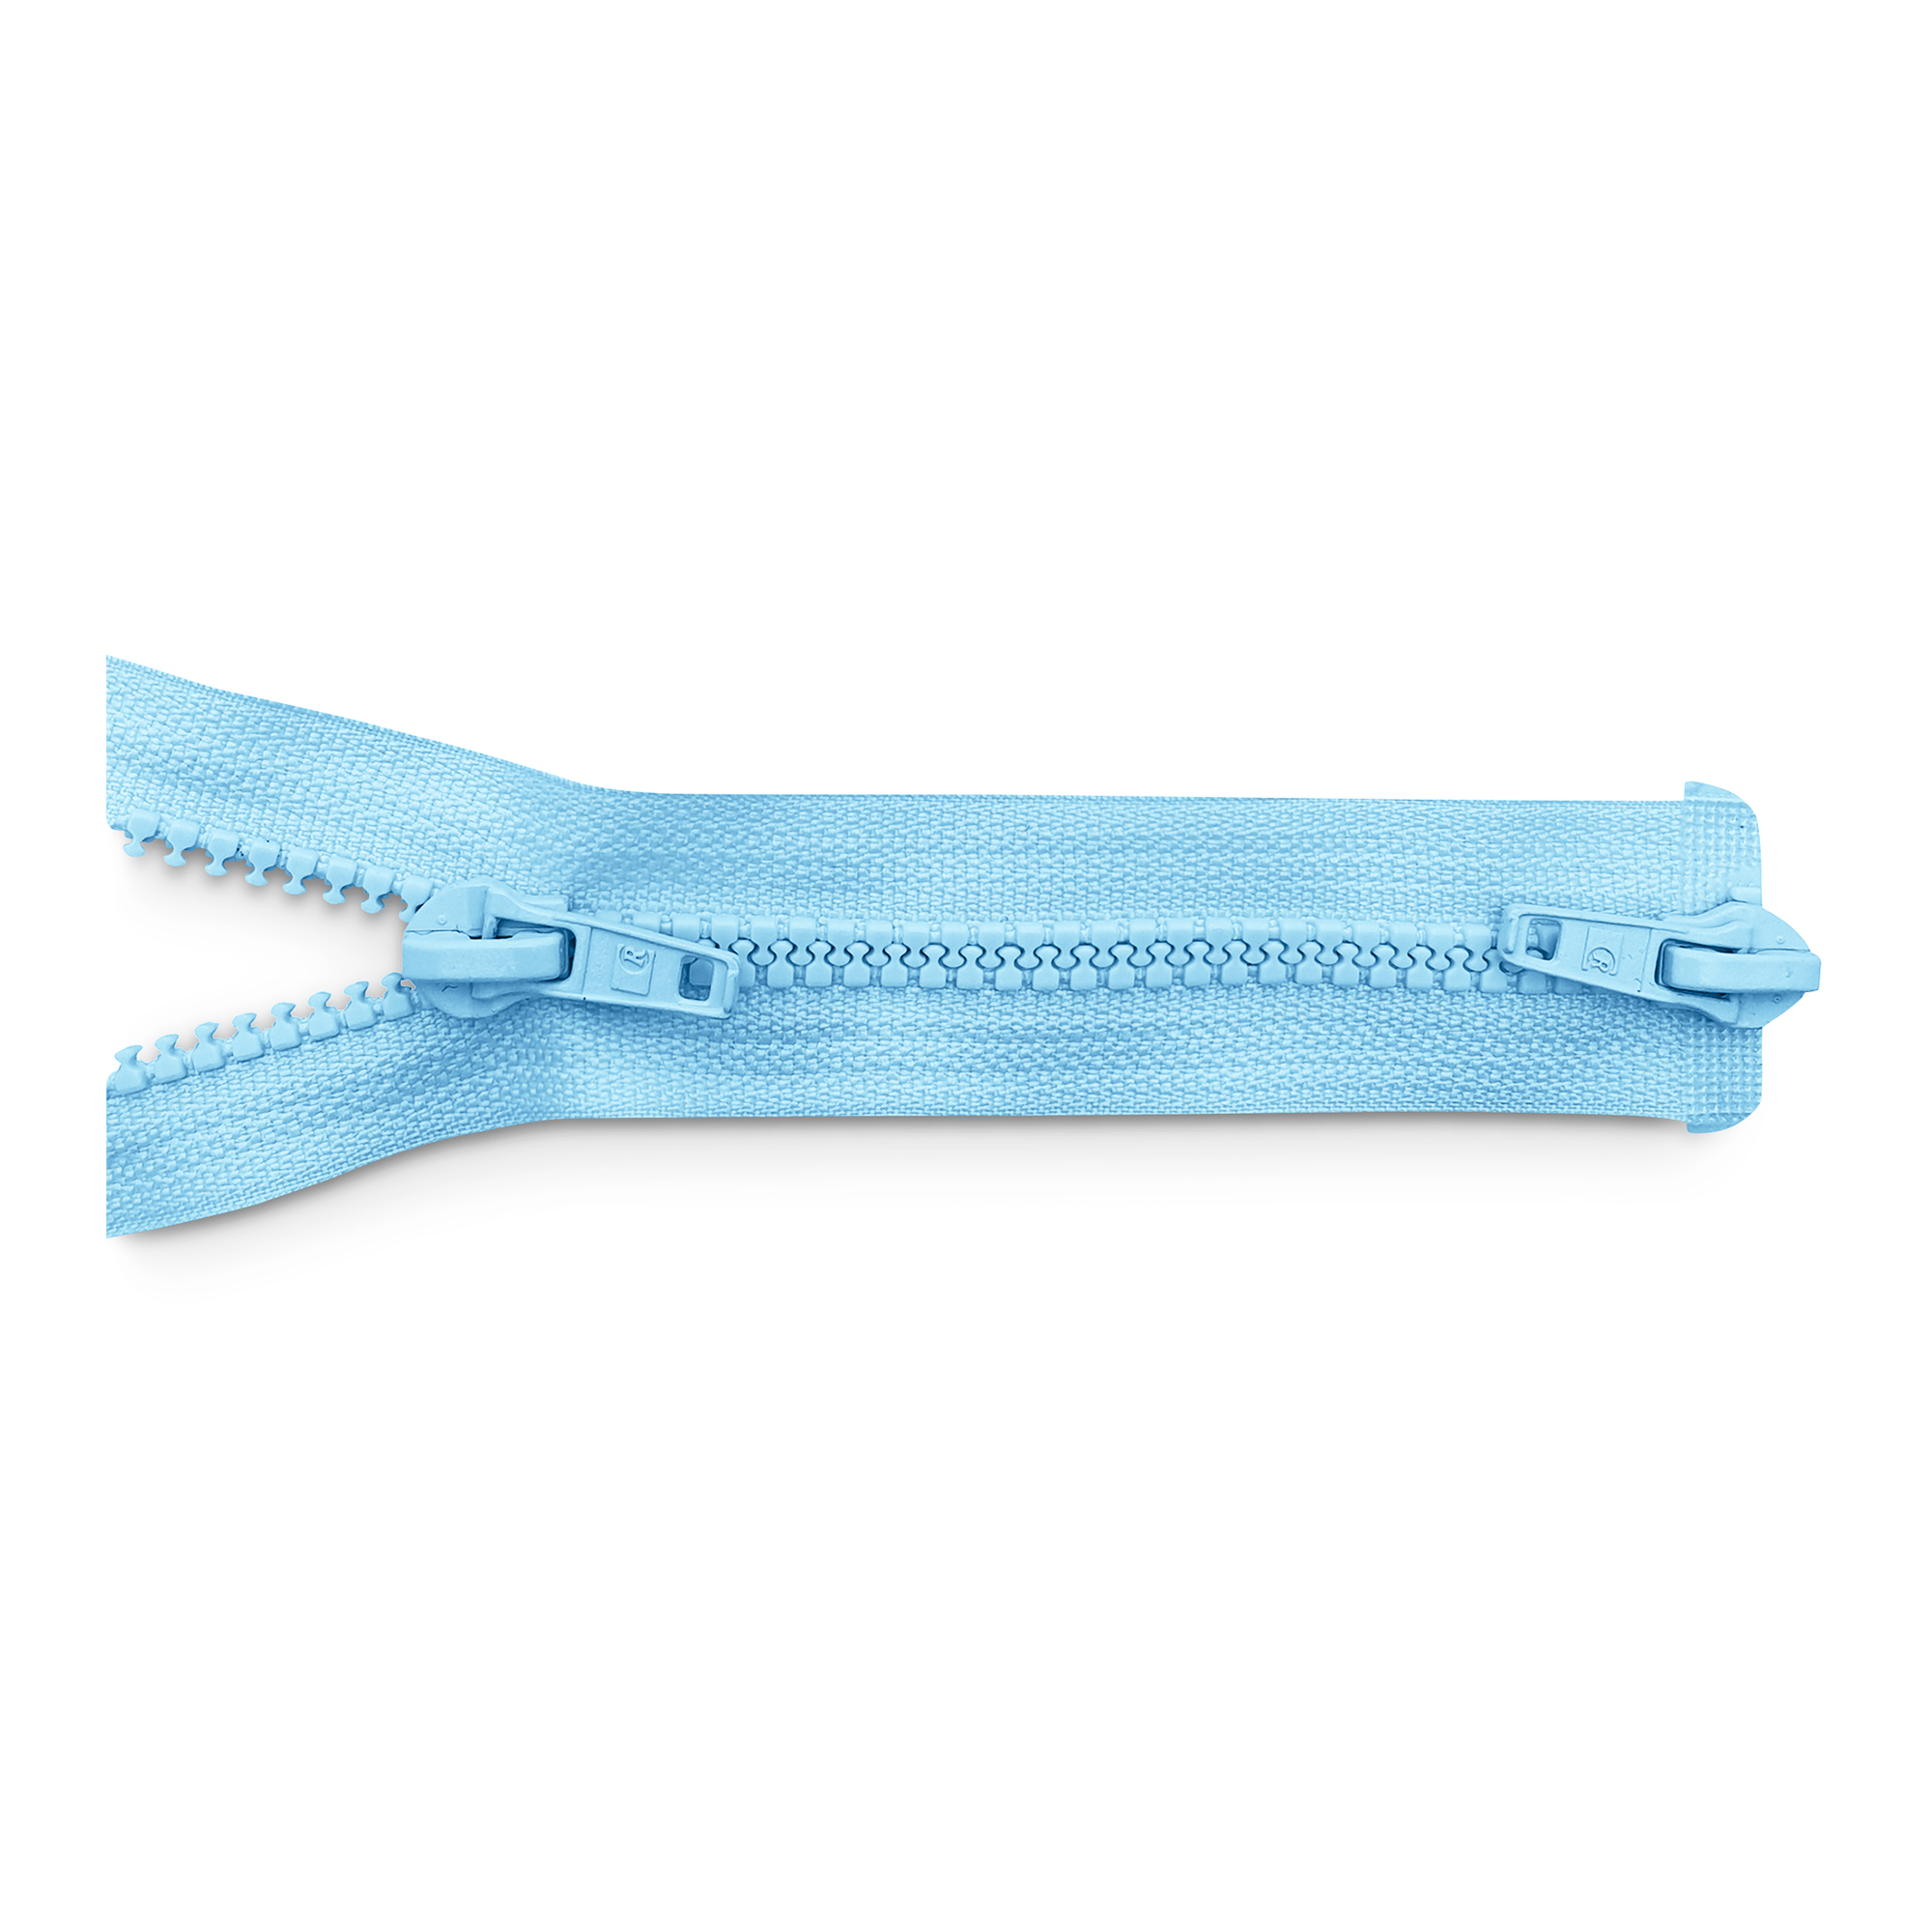 Reißverschluss 100cm, 2-Wege, K.stoff Zähne breit, gardeniablau (blassblau), hochwertiger Marken-Reißverschluss von Rubi/Barcelona